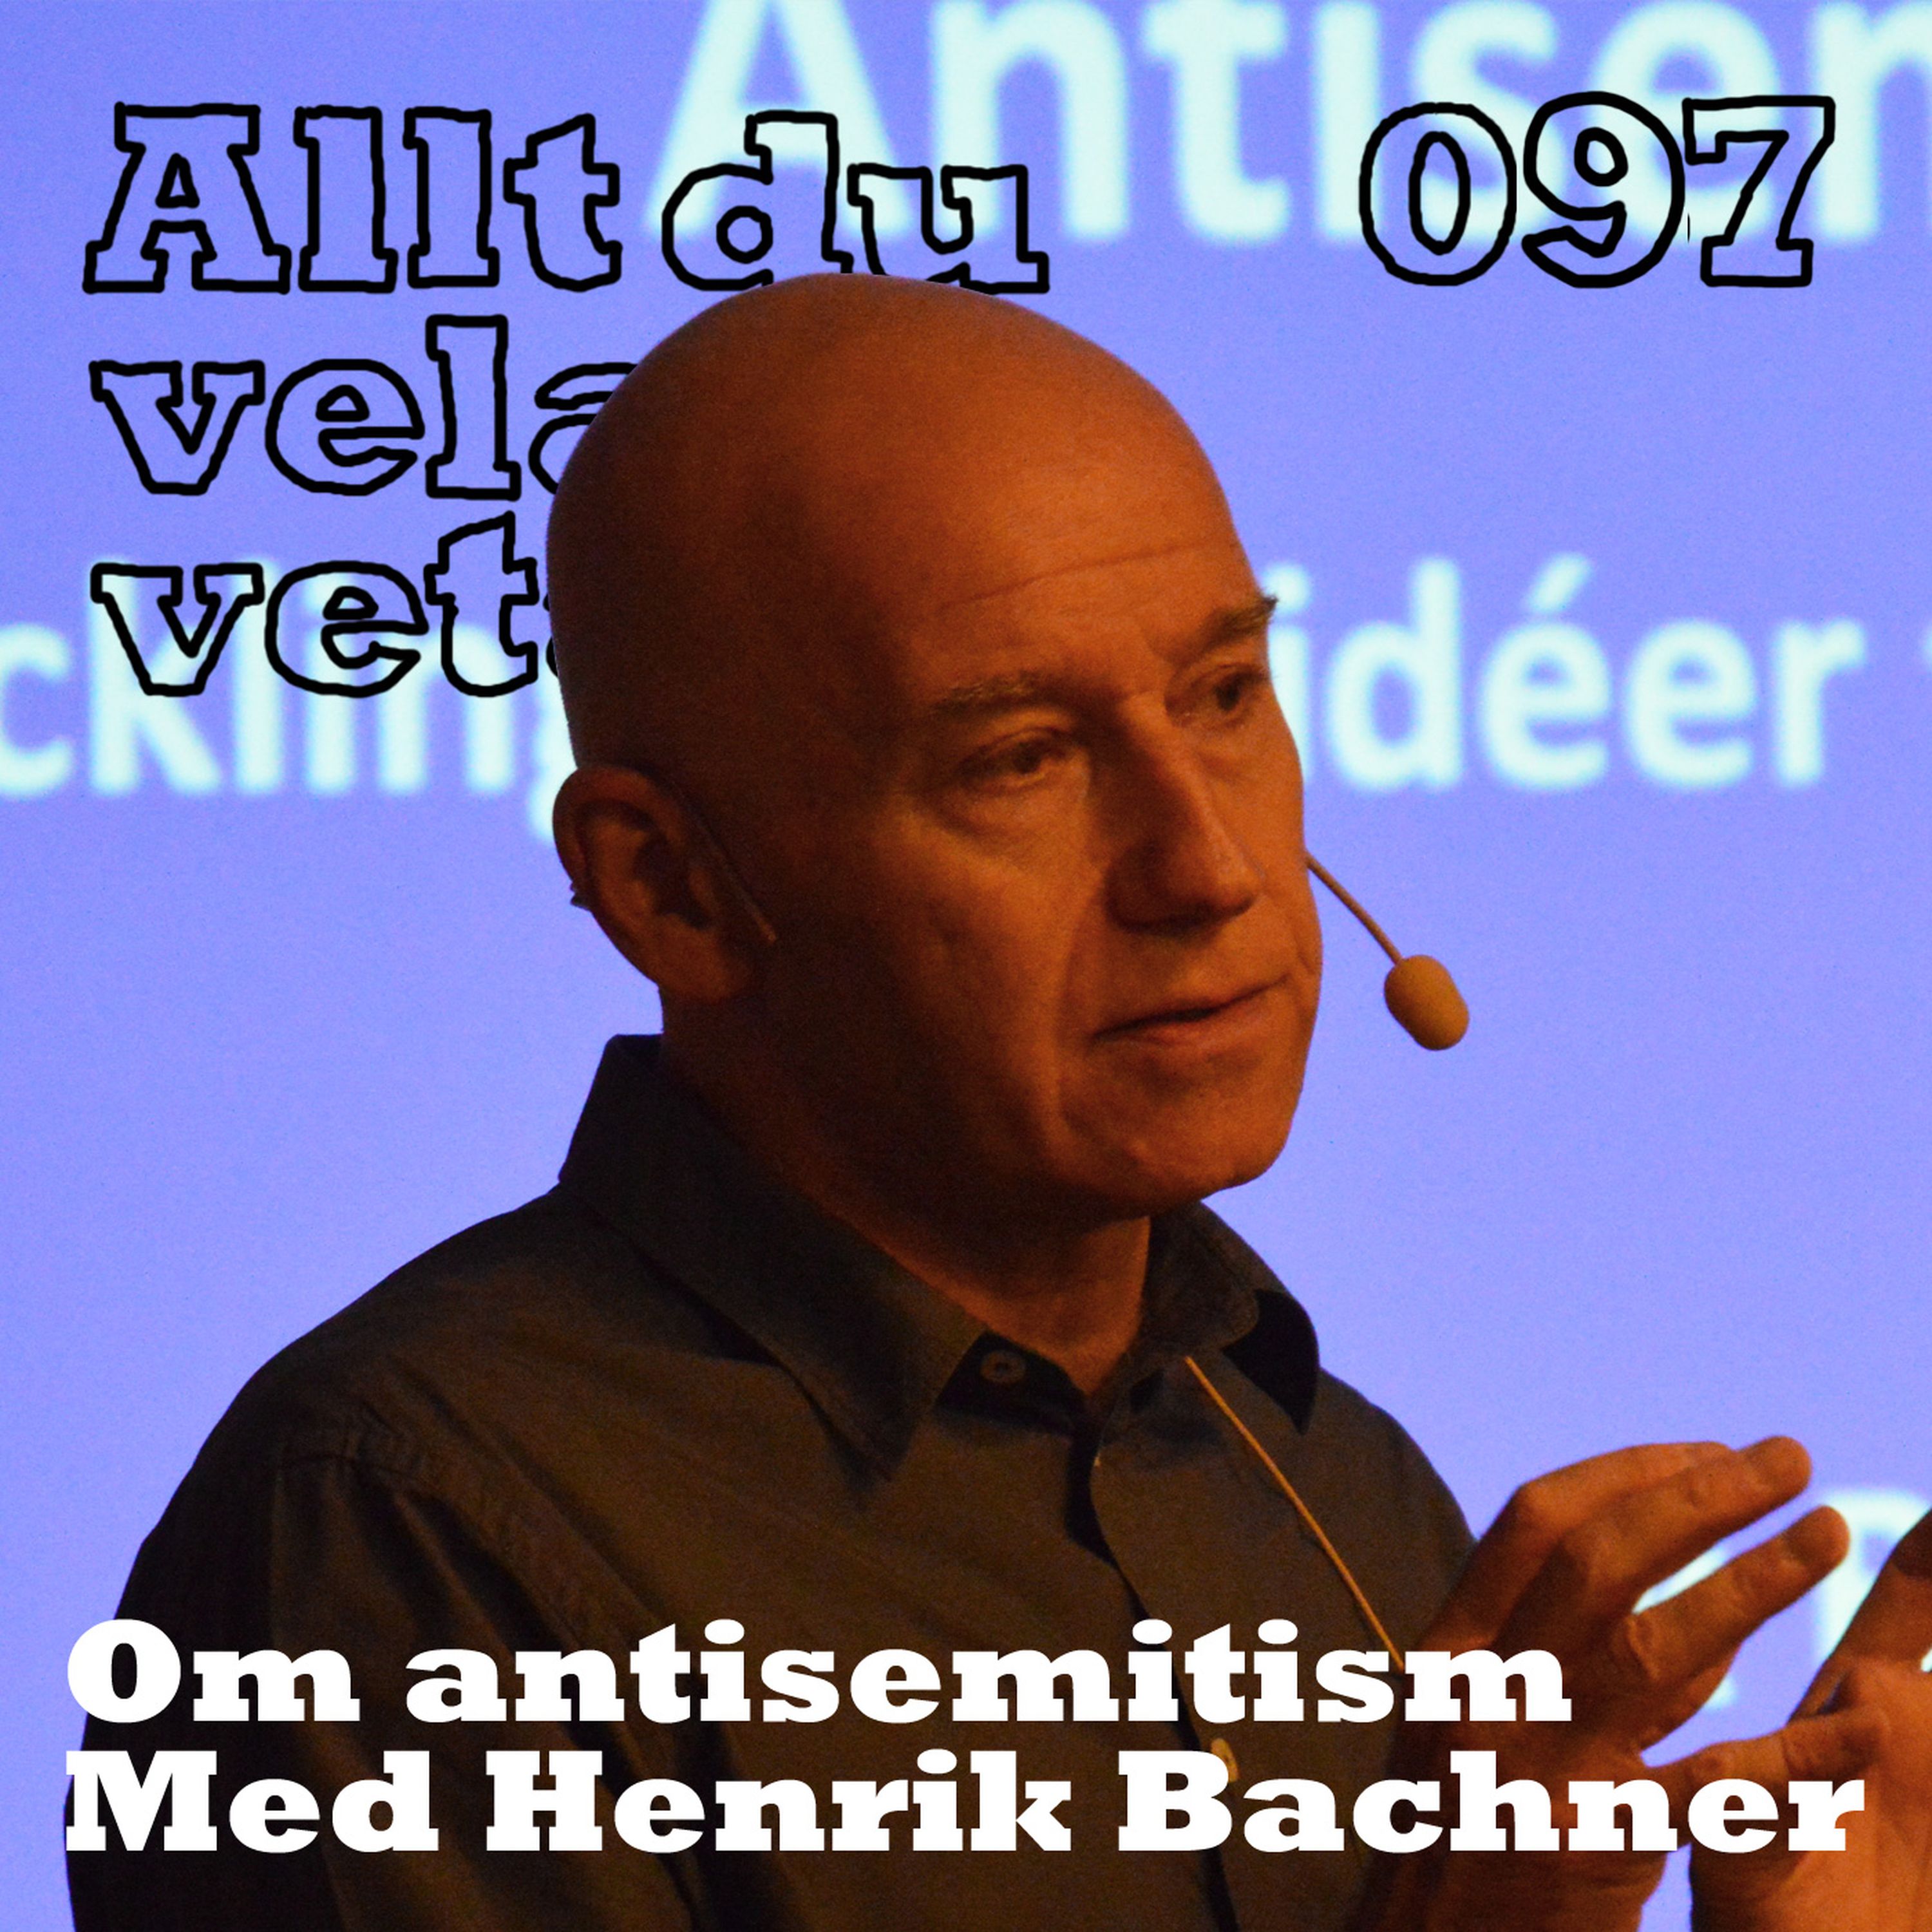 097 Om antisemitism med Henrik Bachner